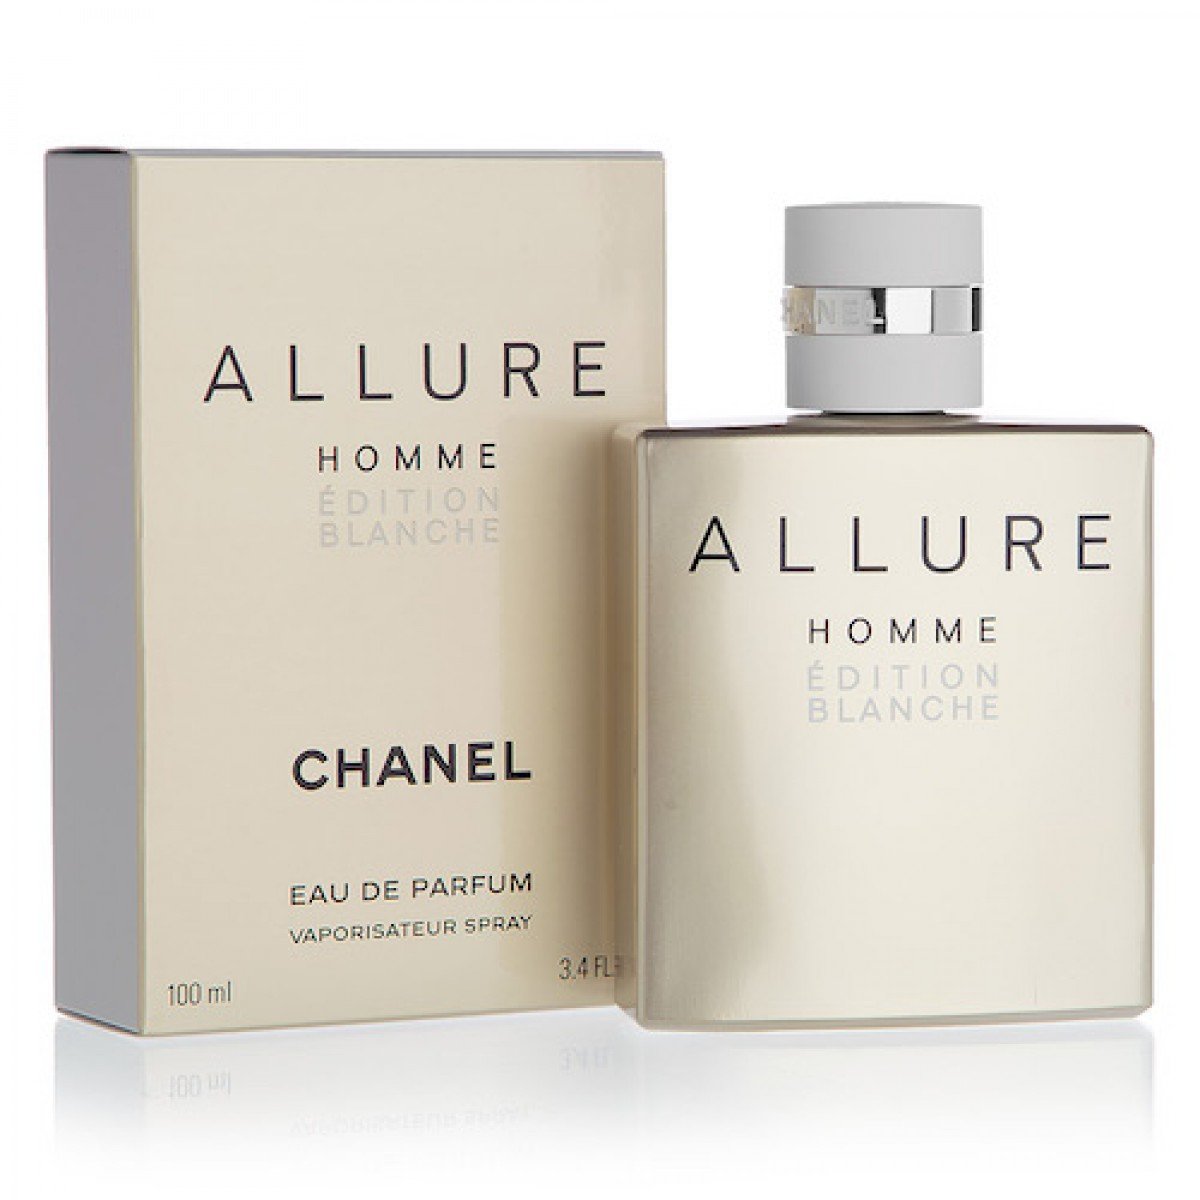 Туалетная вода chanel allure homme. Chanel Allure homme Edition Blanche 100ml. Chanel Allure homme Edition Edition. Chanel Allure homme 100 ml. Chanel Allure homme Edition Blanche Eau de Parfum.